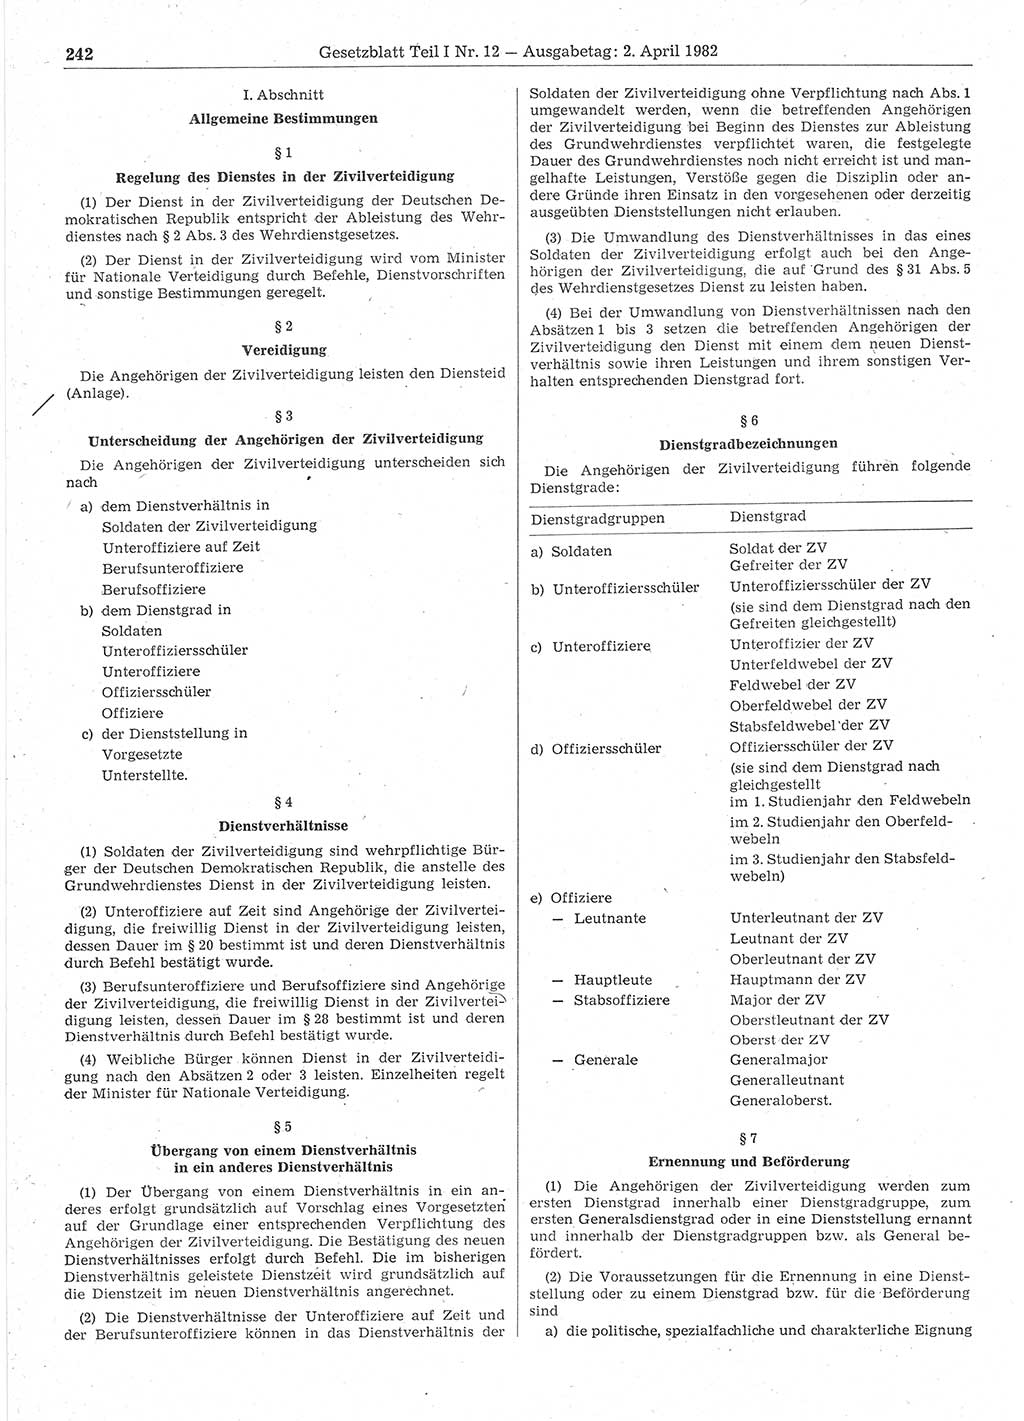 Gesetzblatt (GBl.) der Deutschen Demokratischen Republik (DDR) Teil Ⅰ 1982, Seite 242 (GBl. DDR Ⅰ 1982, S. 242)